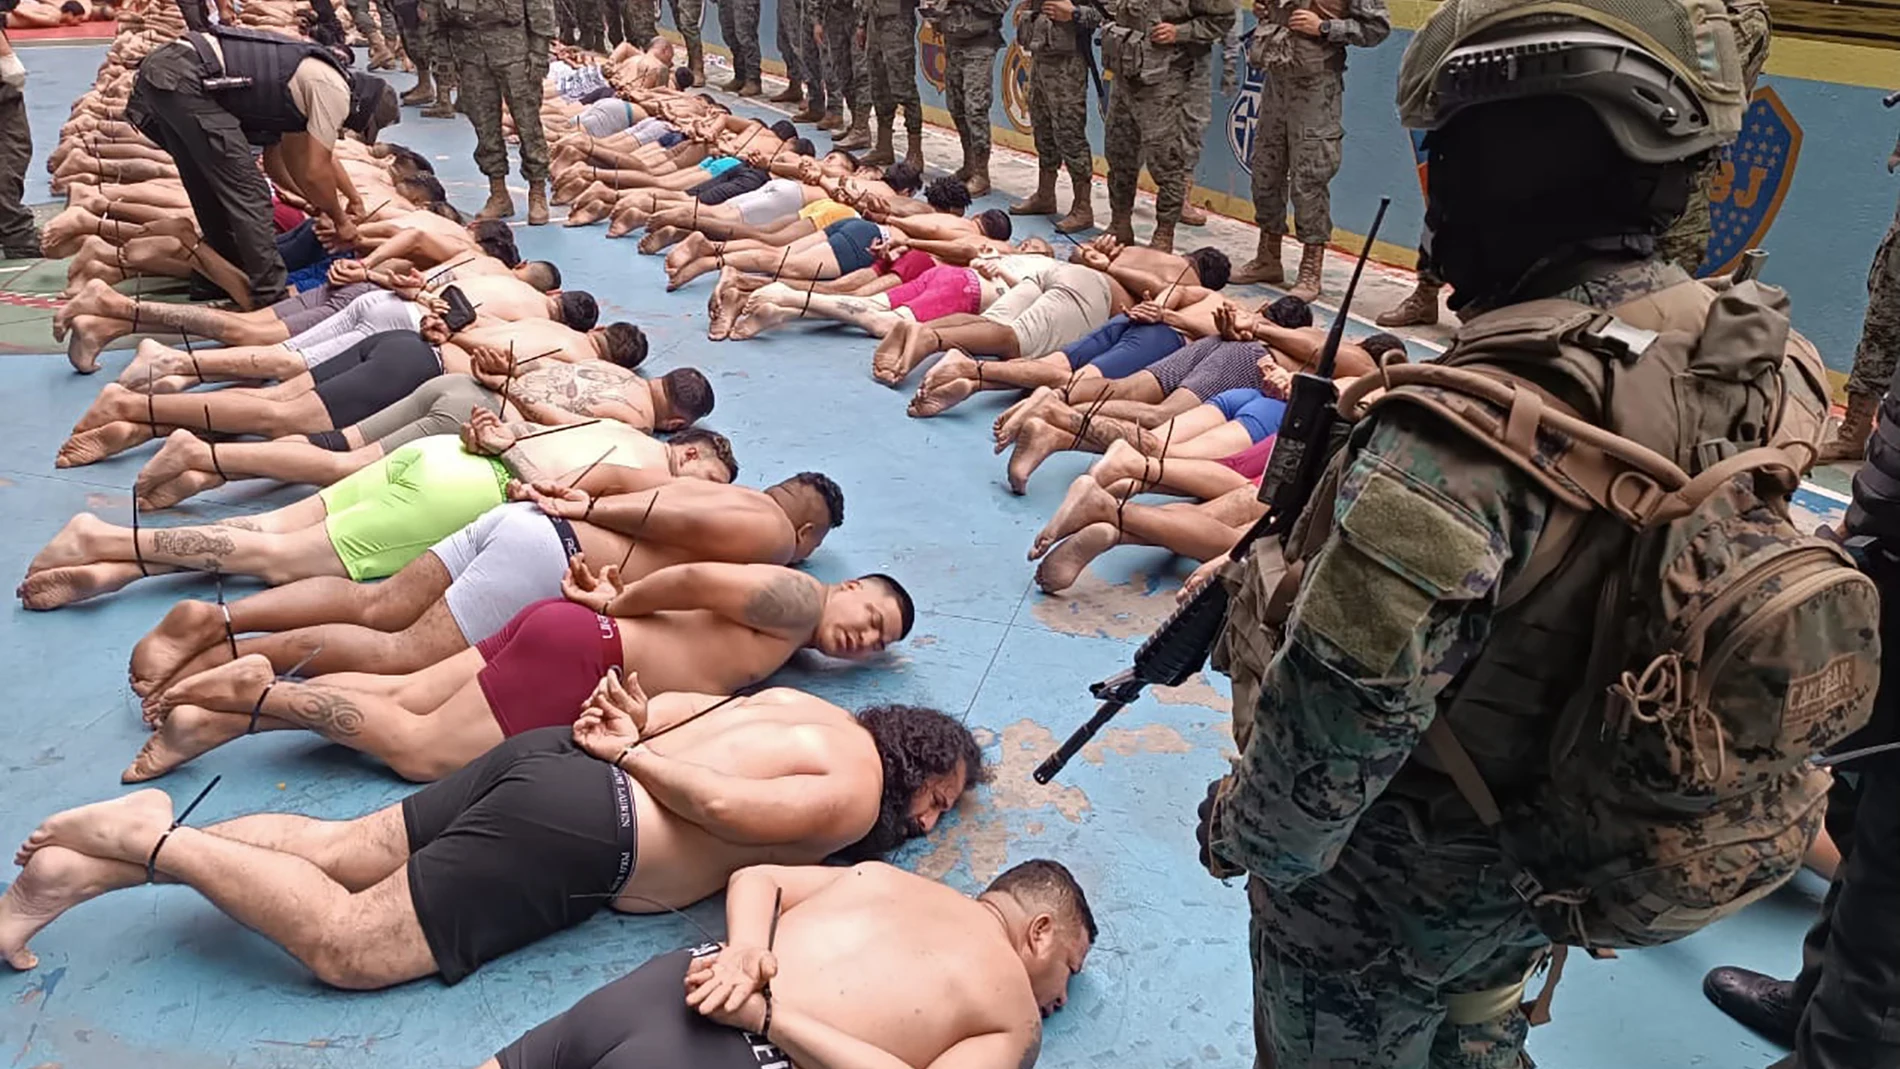 Fotografía difundida por las Fuerzas Armadas ecuatorianas tomada durante un operativo conjunto de la Policía y el Ejército en la Penitenciaría Zonal No 8 de Guayaquil, Ecuador, el 12 de agosto de 2023